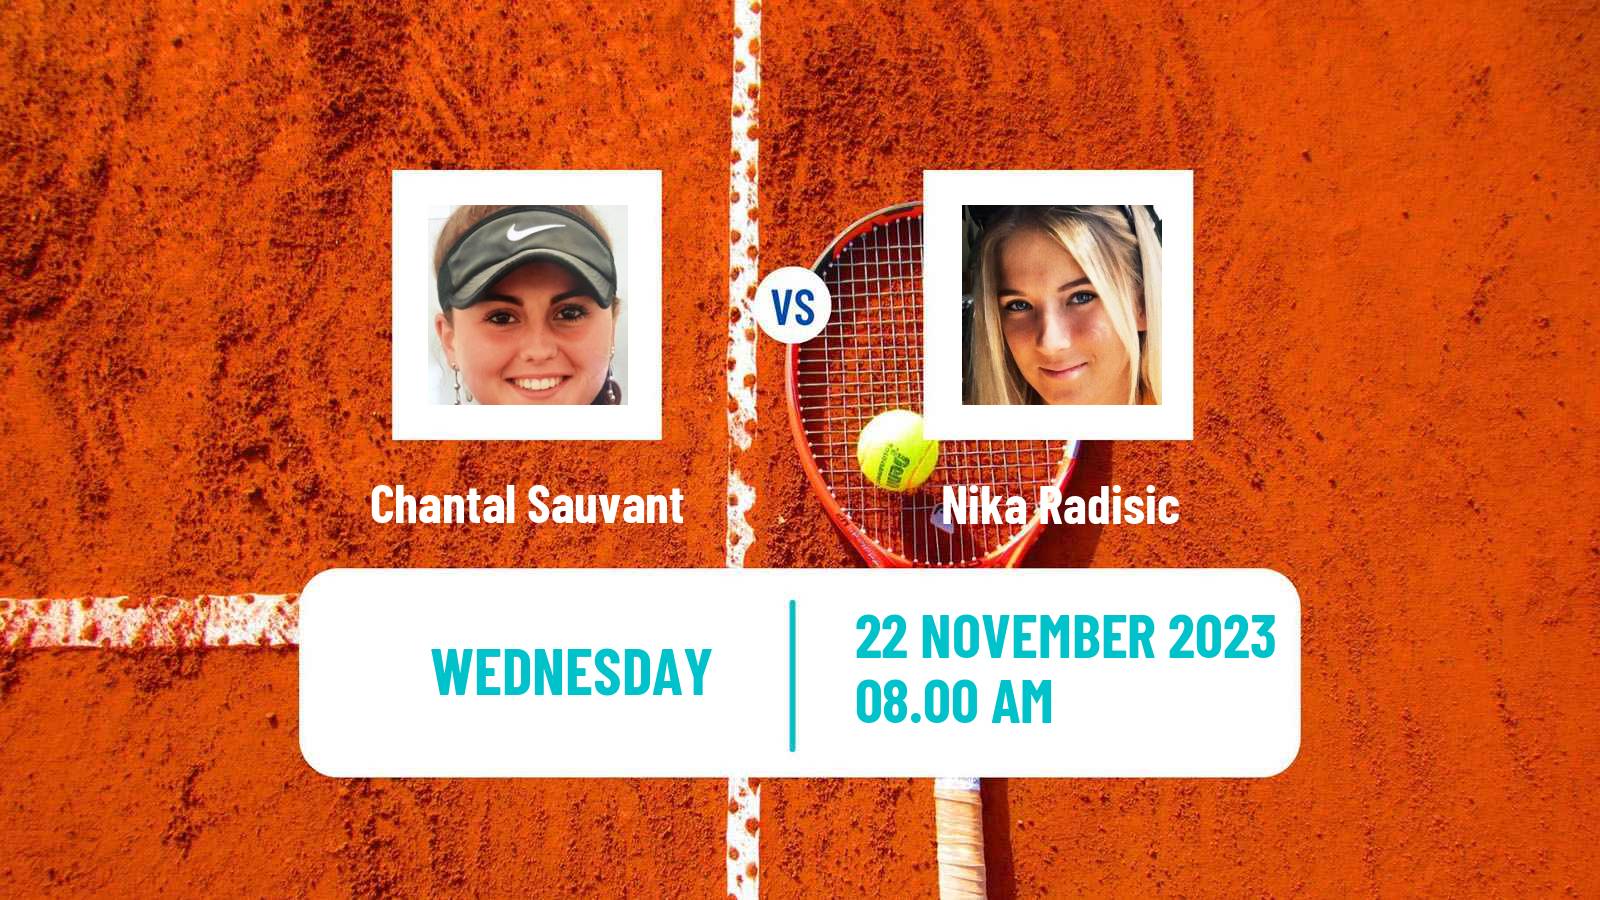 Tennis ITF W100 Valencia Women Chantal Sauvant - Nika Radisic